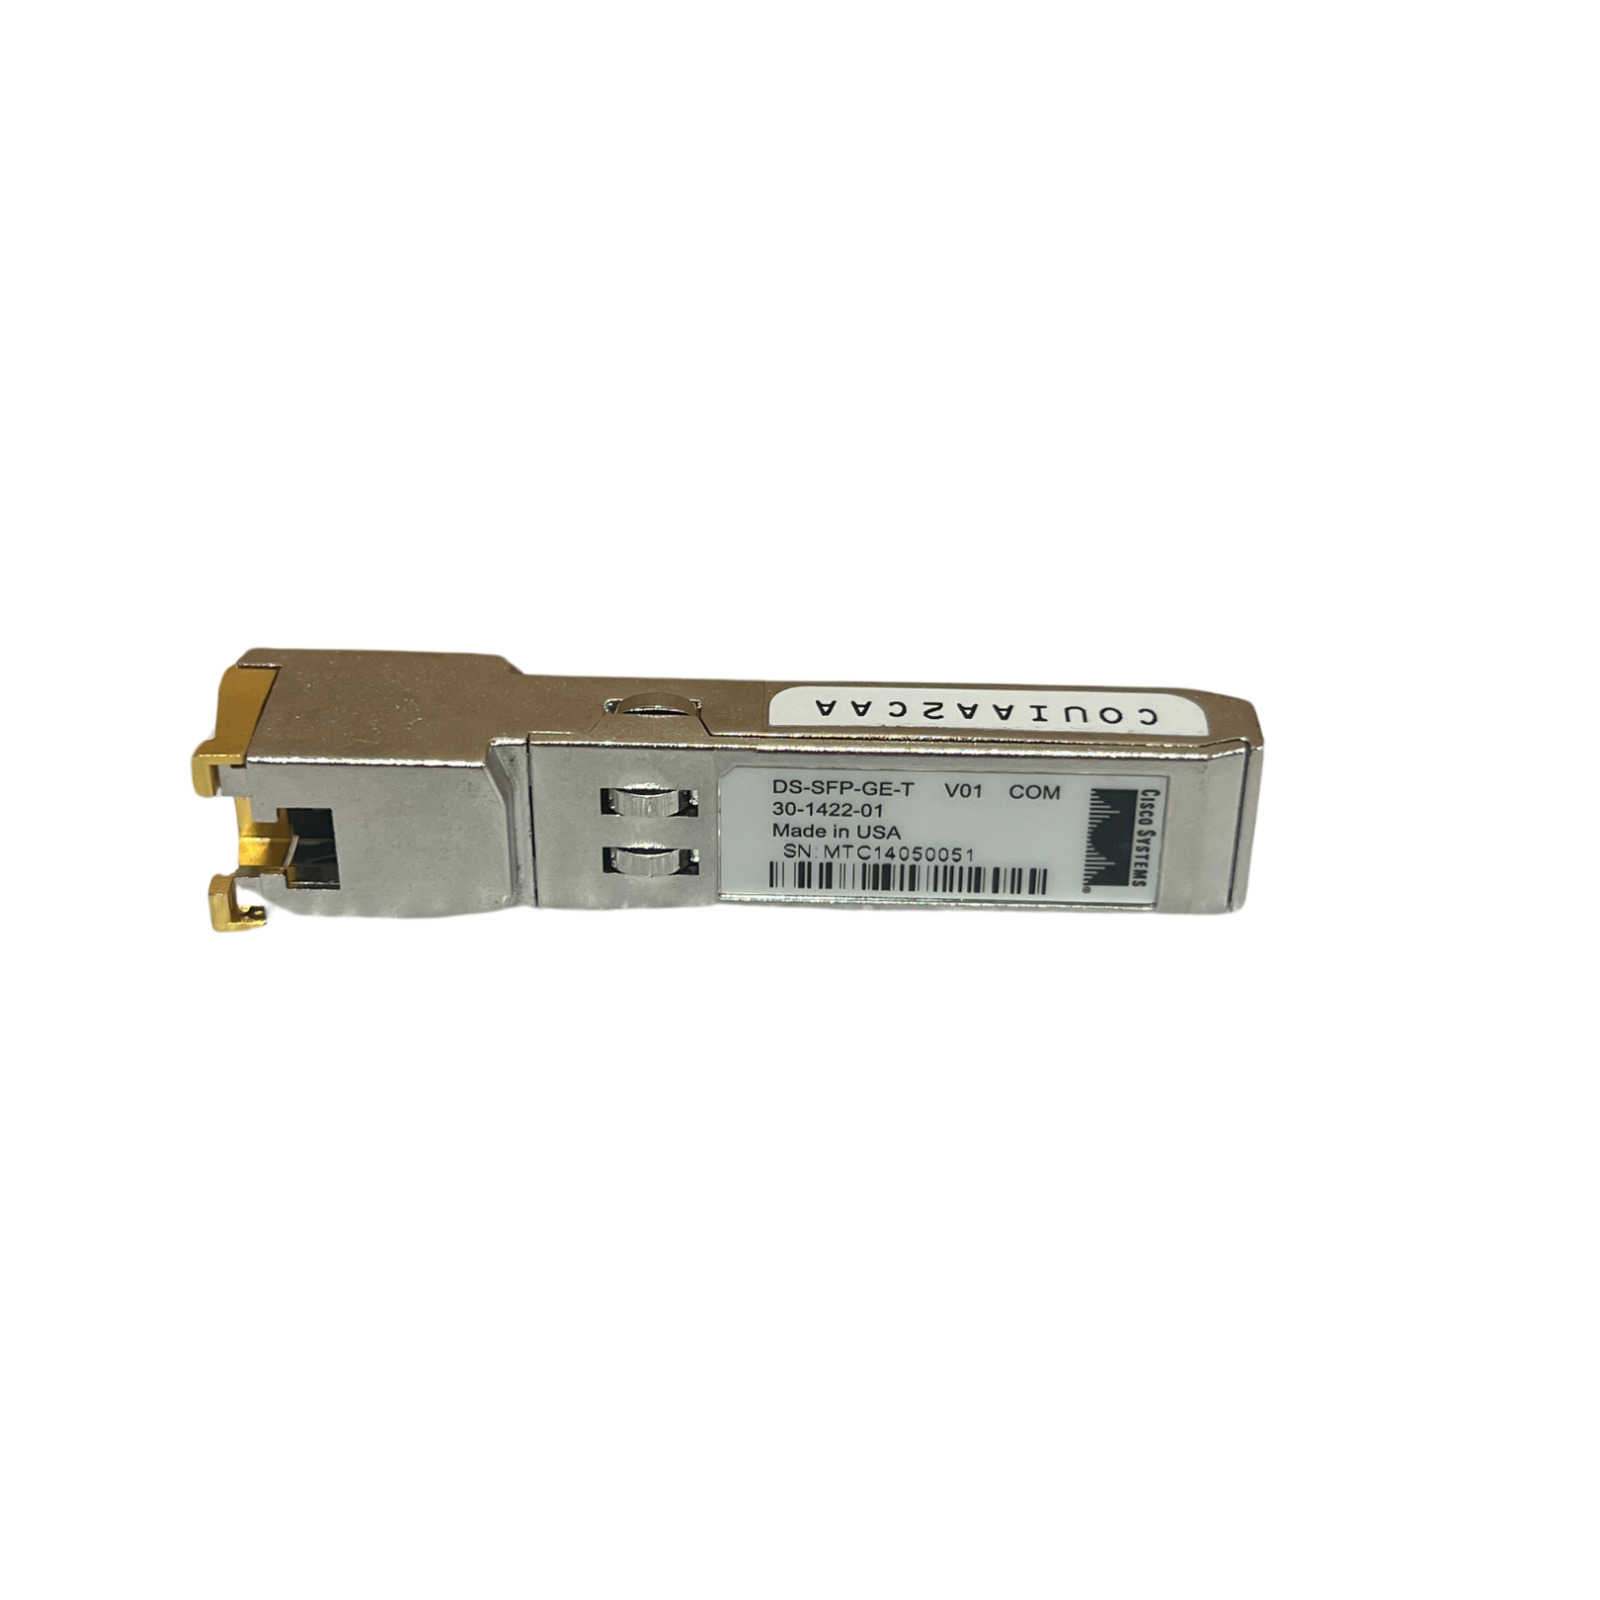 Cisco DS-SFP-GE-T Compatible 1000BASE-T SFP Transceiver Module (100m)